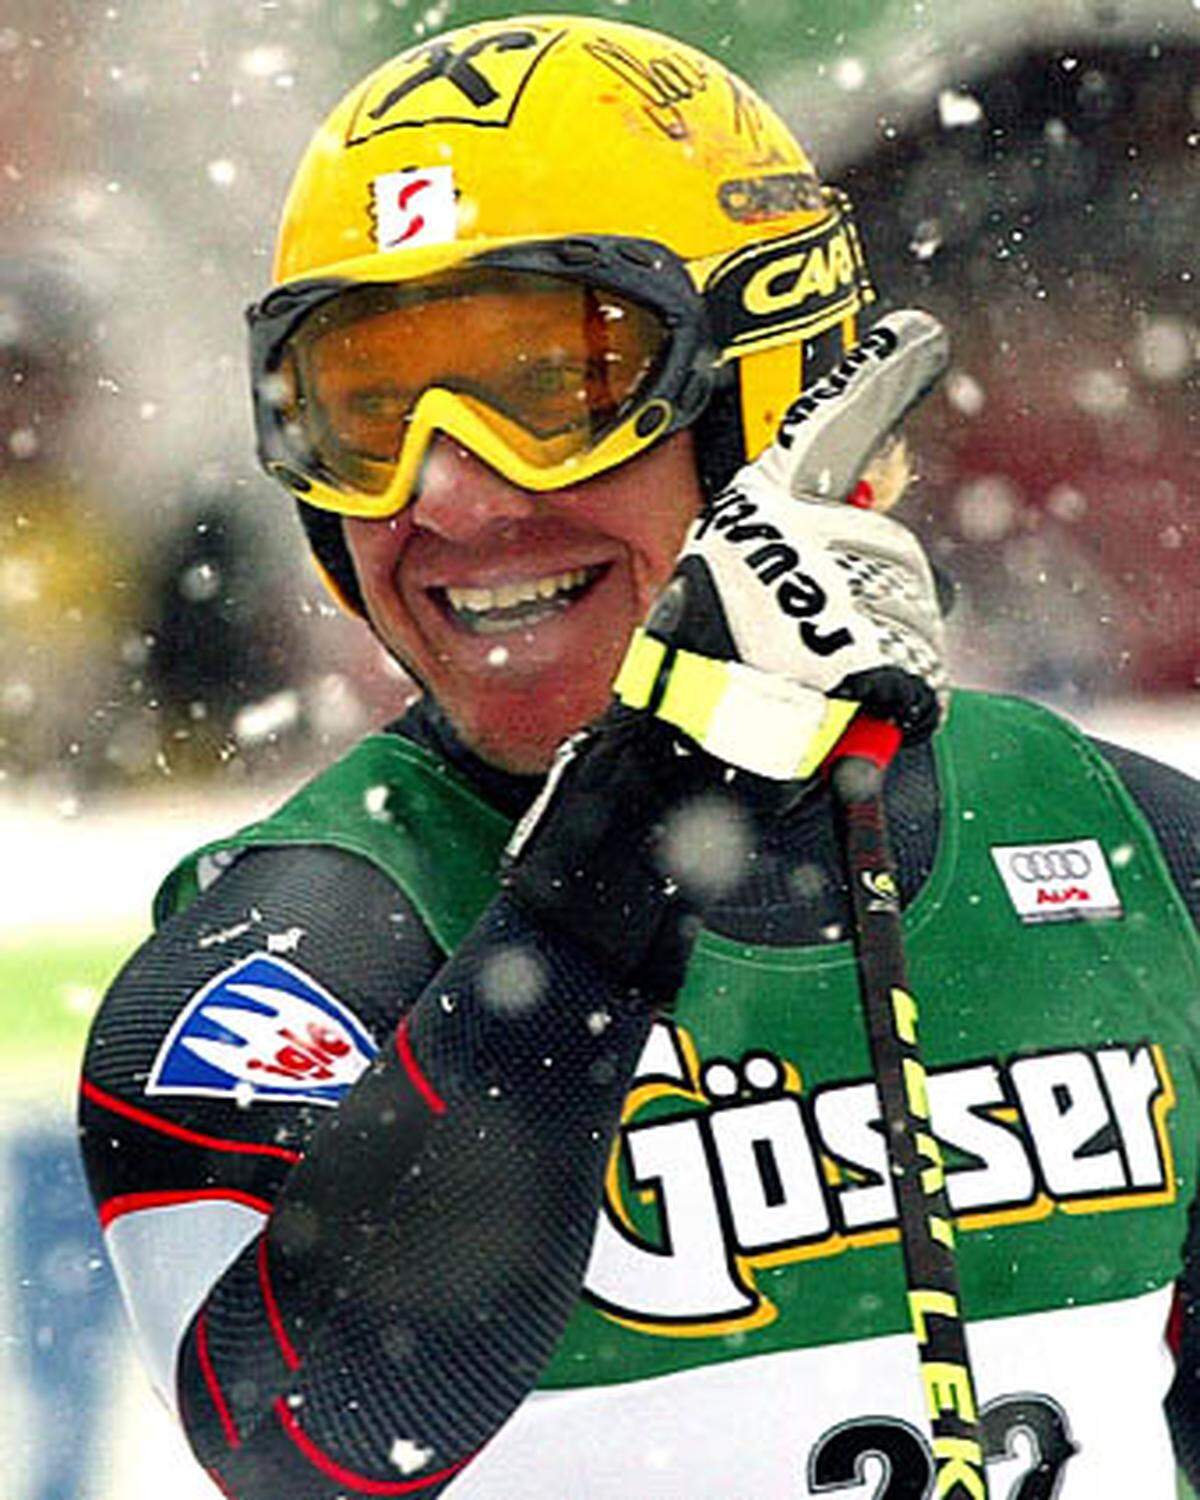 Und das Unglaubliche geschieht: Nicht einmal zwei Wochen später, am 27.1.2003 steht der "Herminator" wieder ganz oben auf dem Podest. Die Skiwelt staunt über seinen Triumph beim Super-G in Kitzbühel.